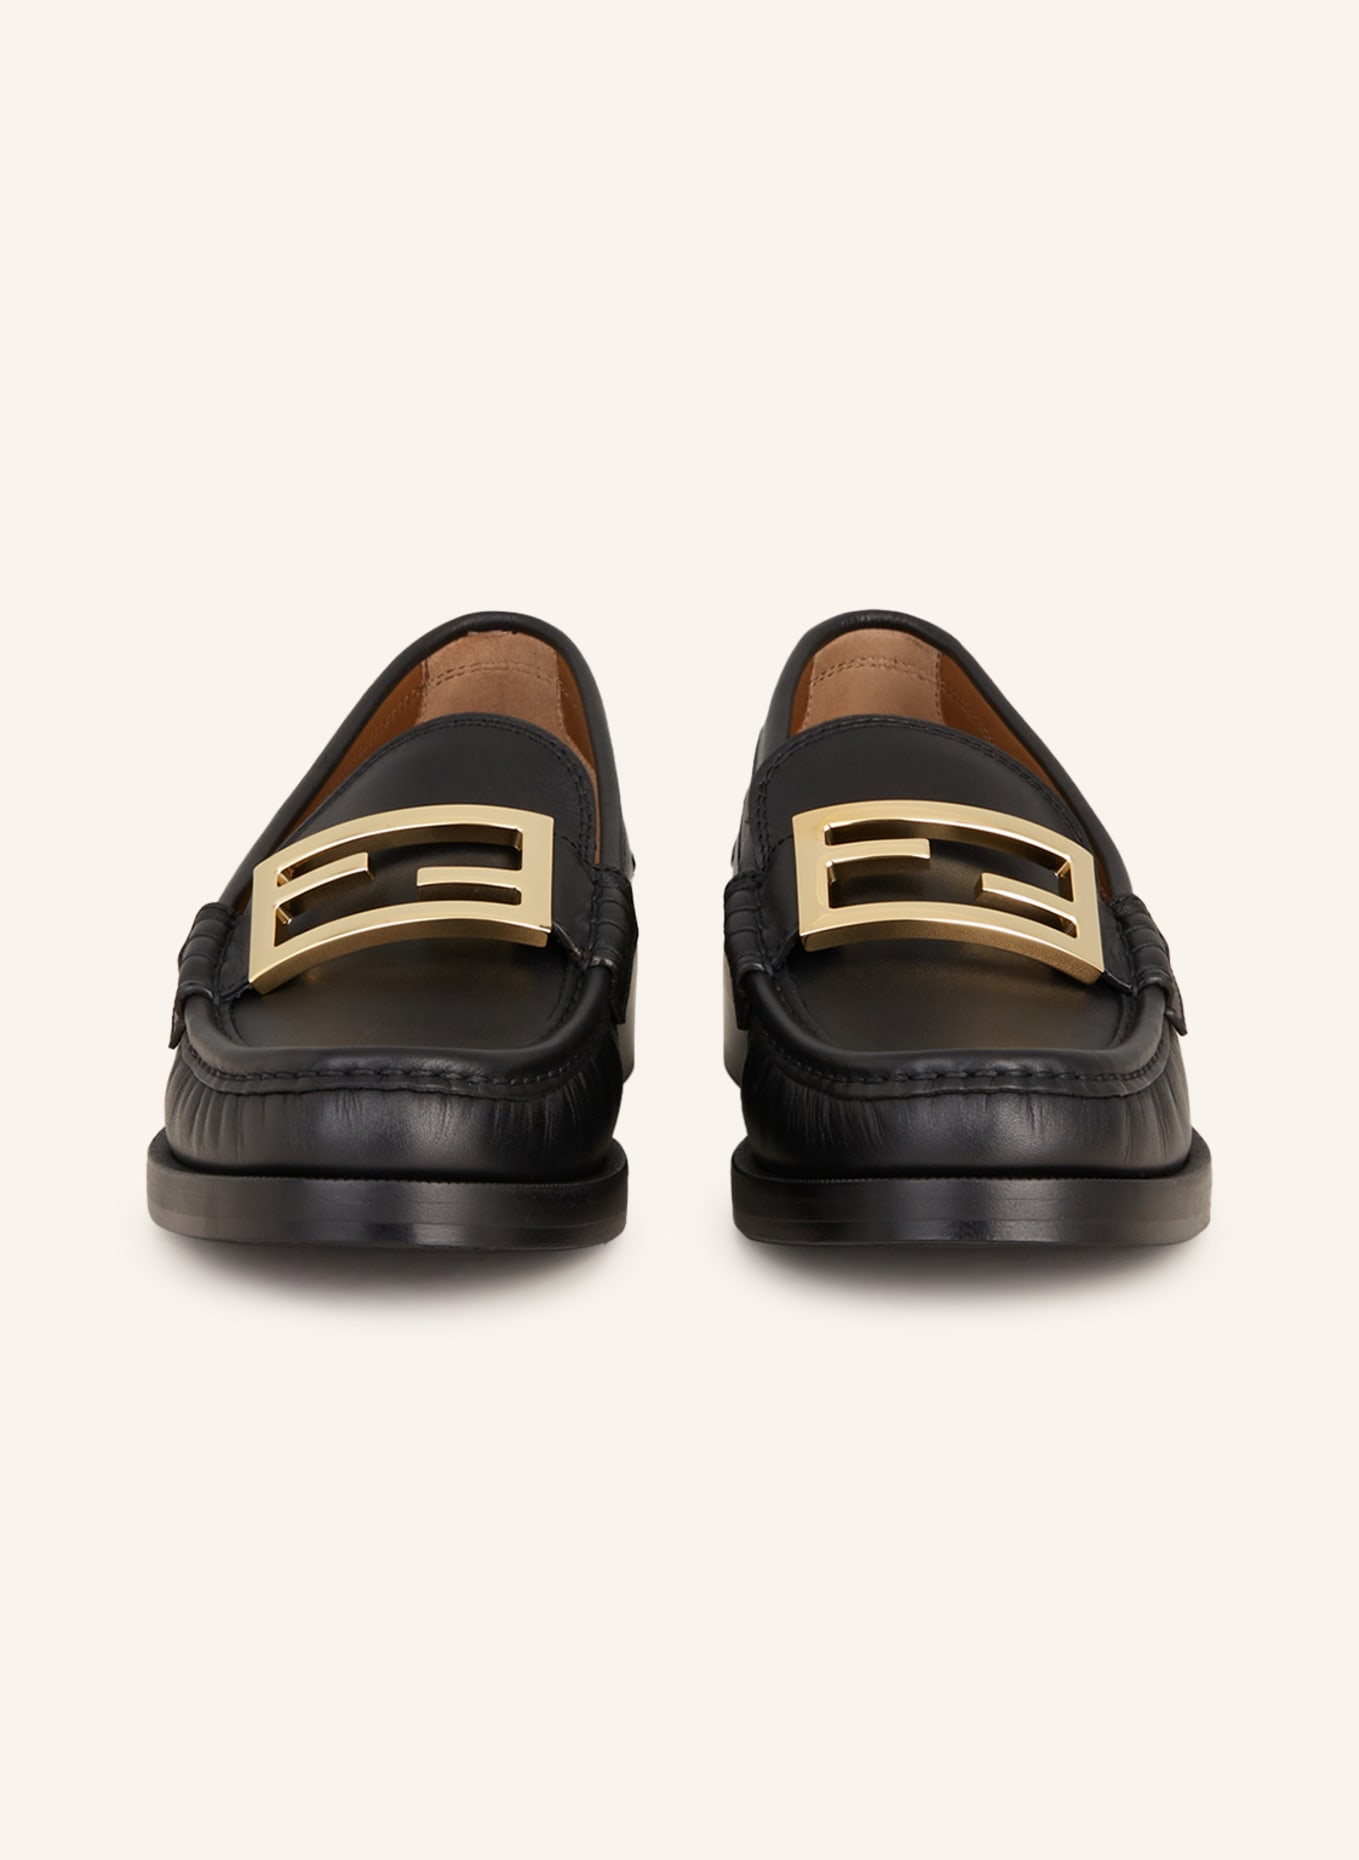 FENDI Loafers, Color: BLACK (Image 3)